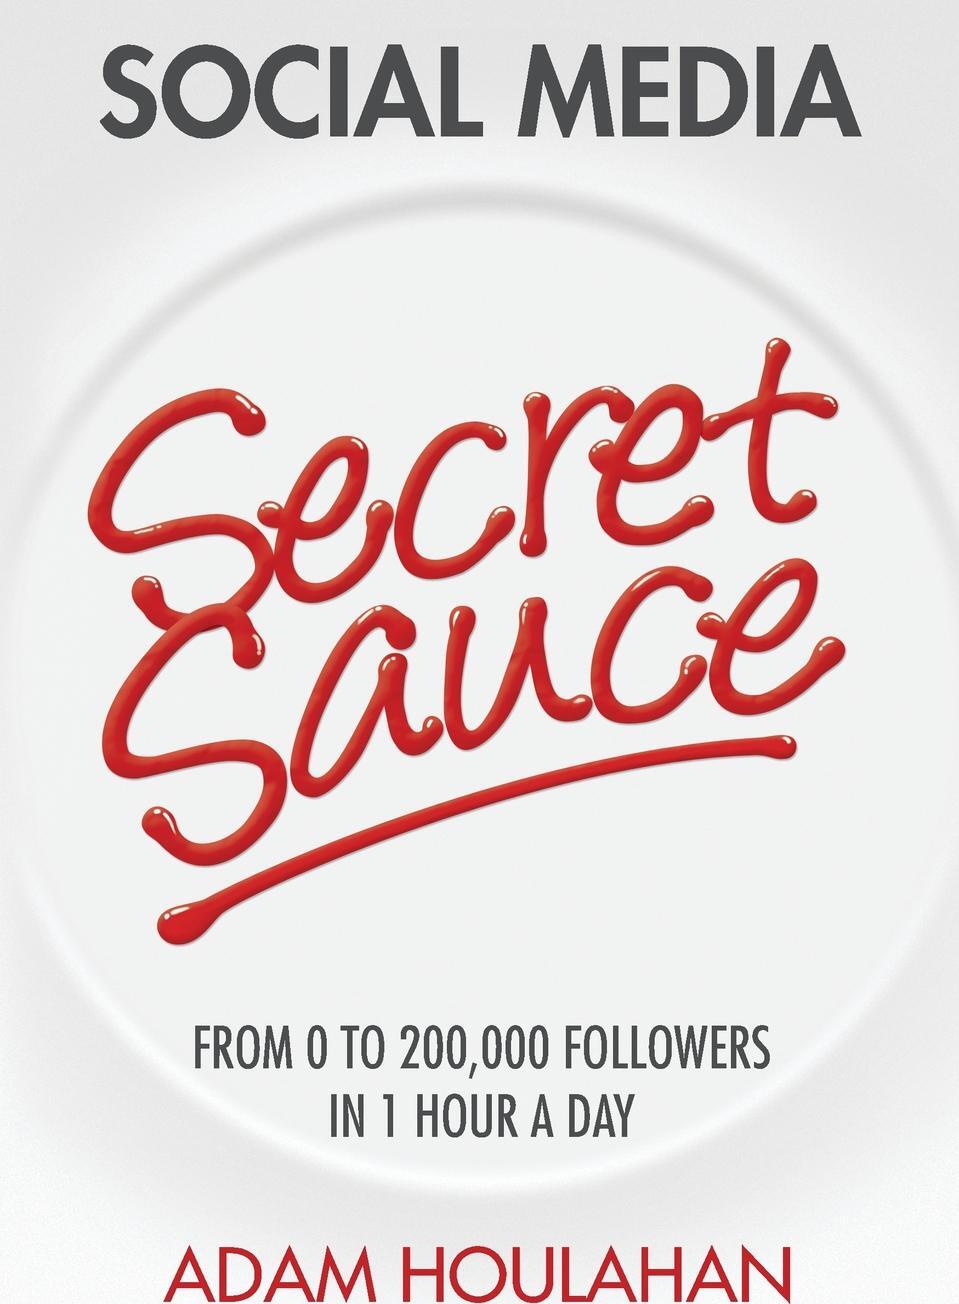 Secret media. One Day Адамс. Купить книгу про соусы. Secret Sauce.